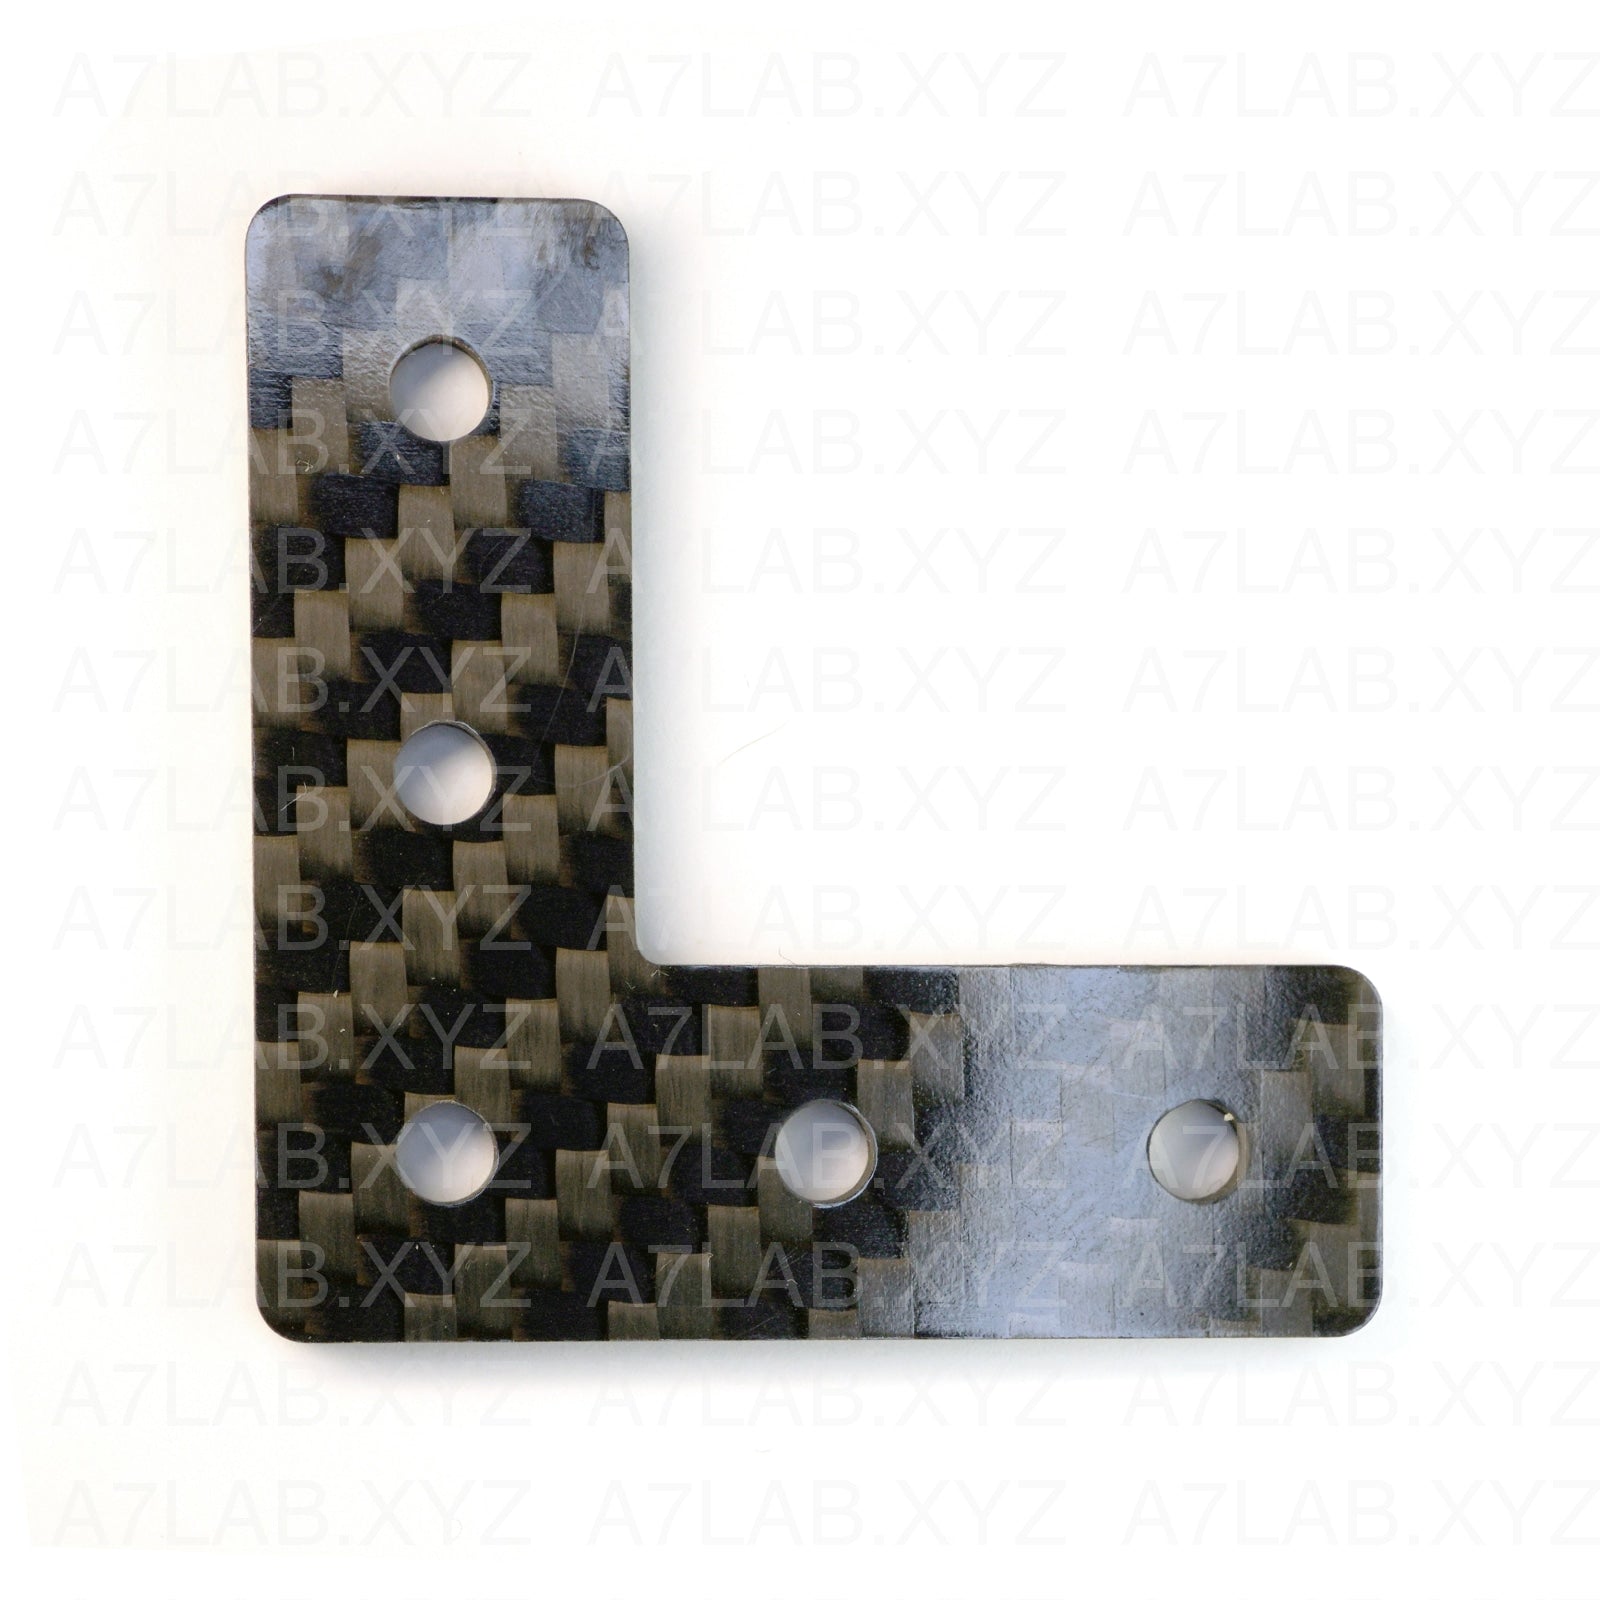 L-shape 1515 profile M3, M4 (CNC machined) carbon plate